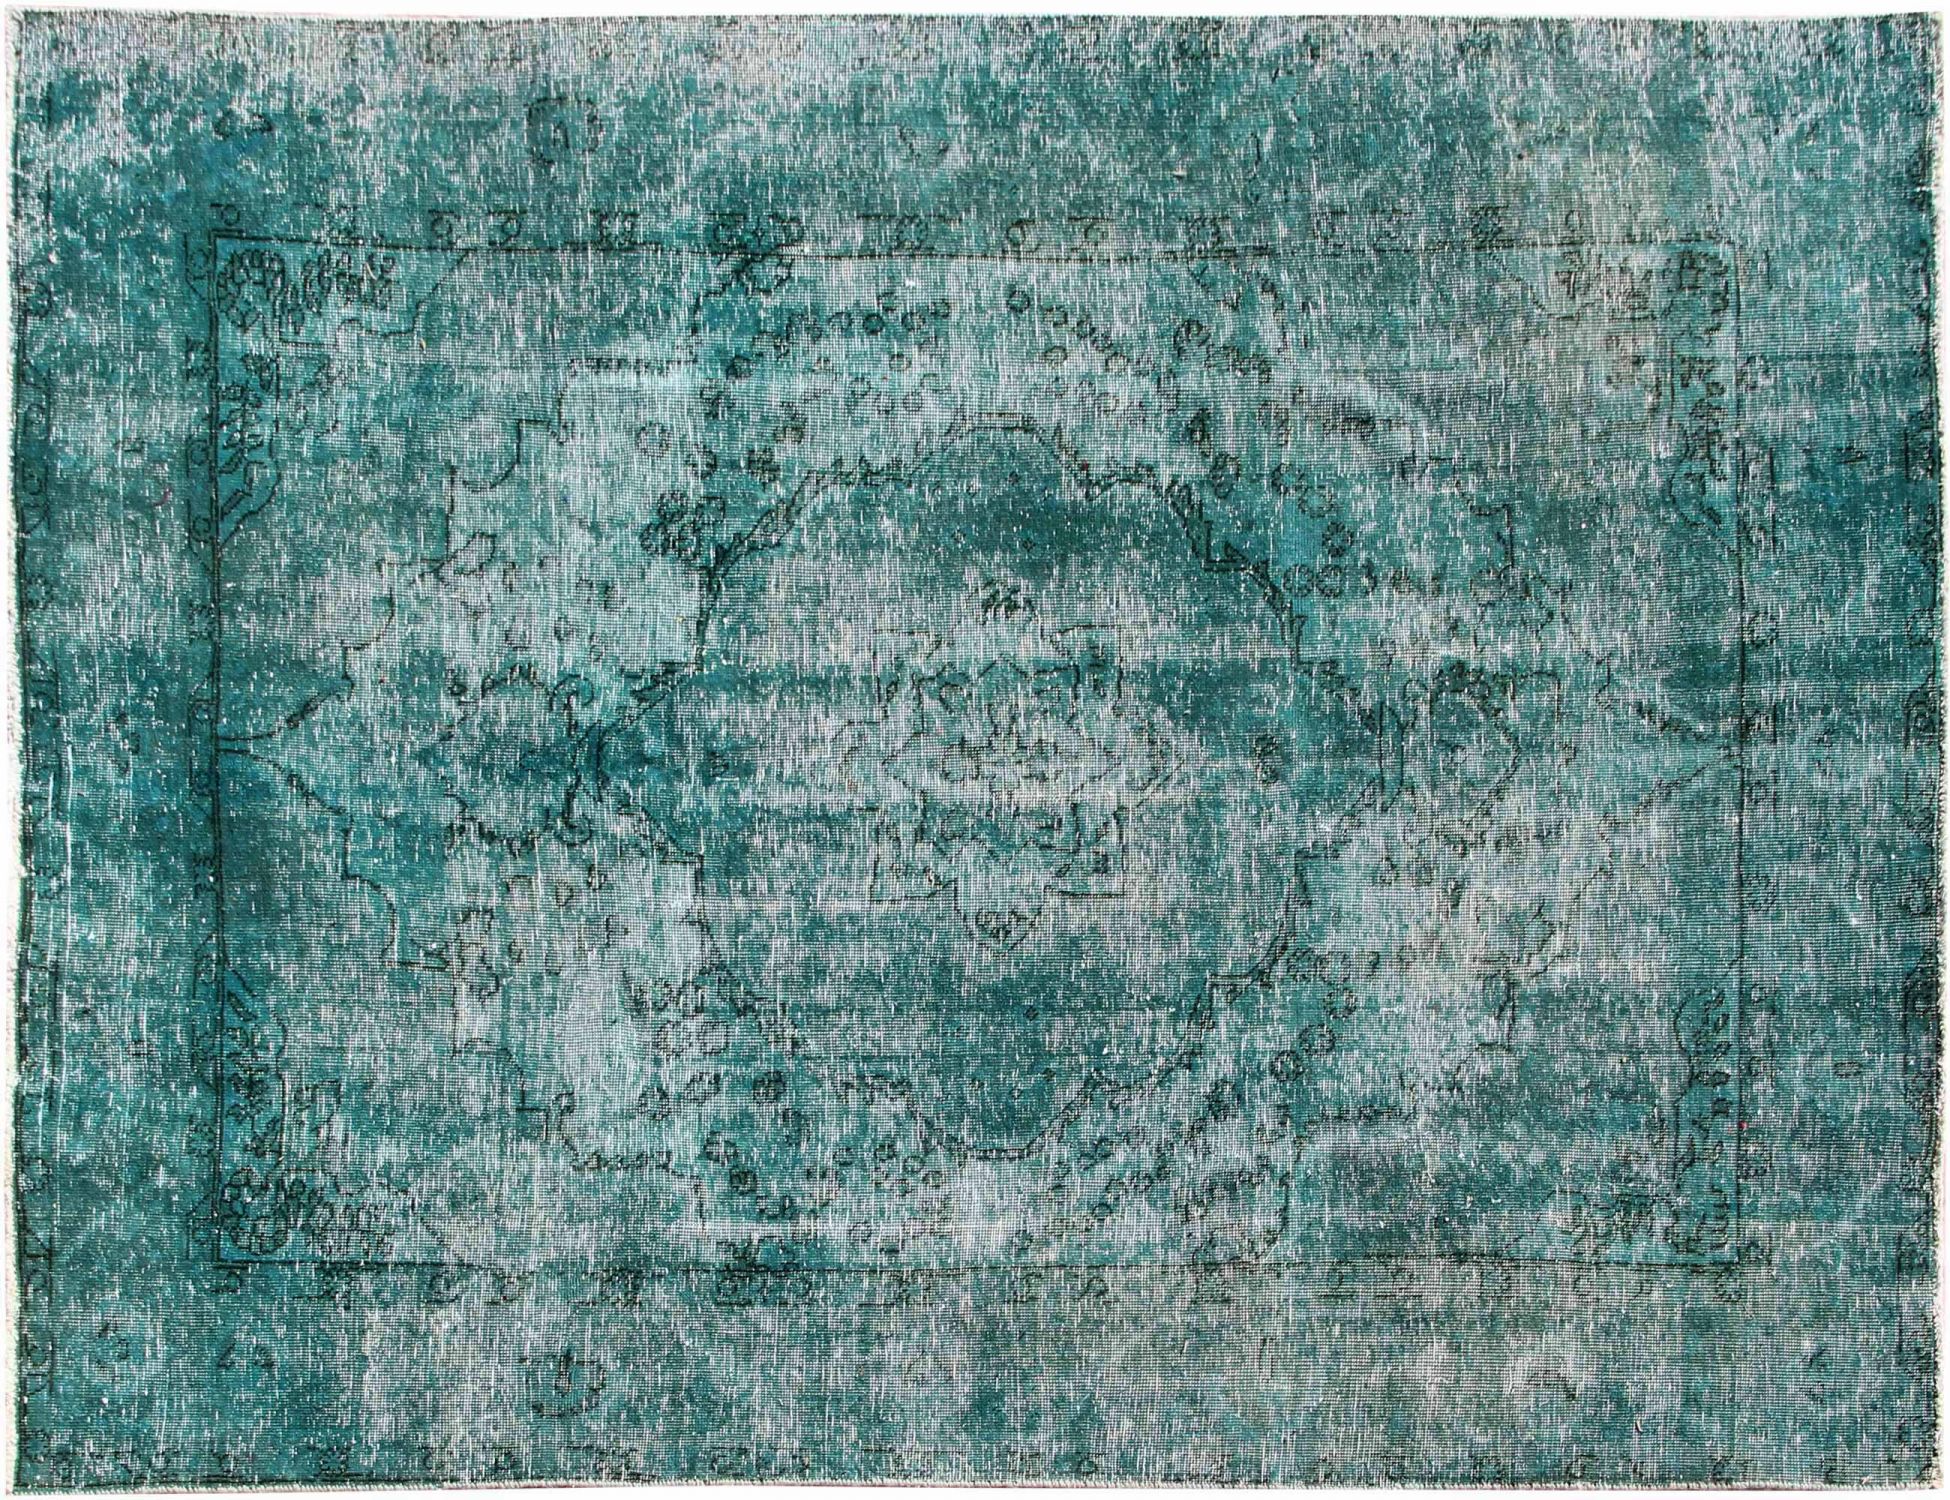 Persian Vintage Carpet  turkoise  <br/>280 x 200 cm